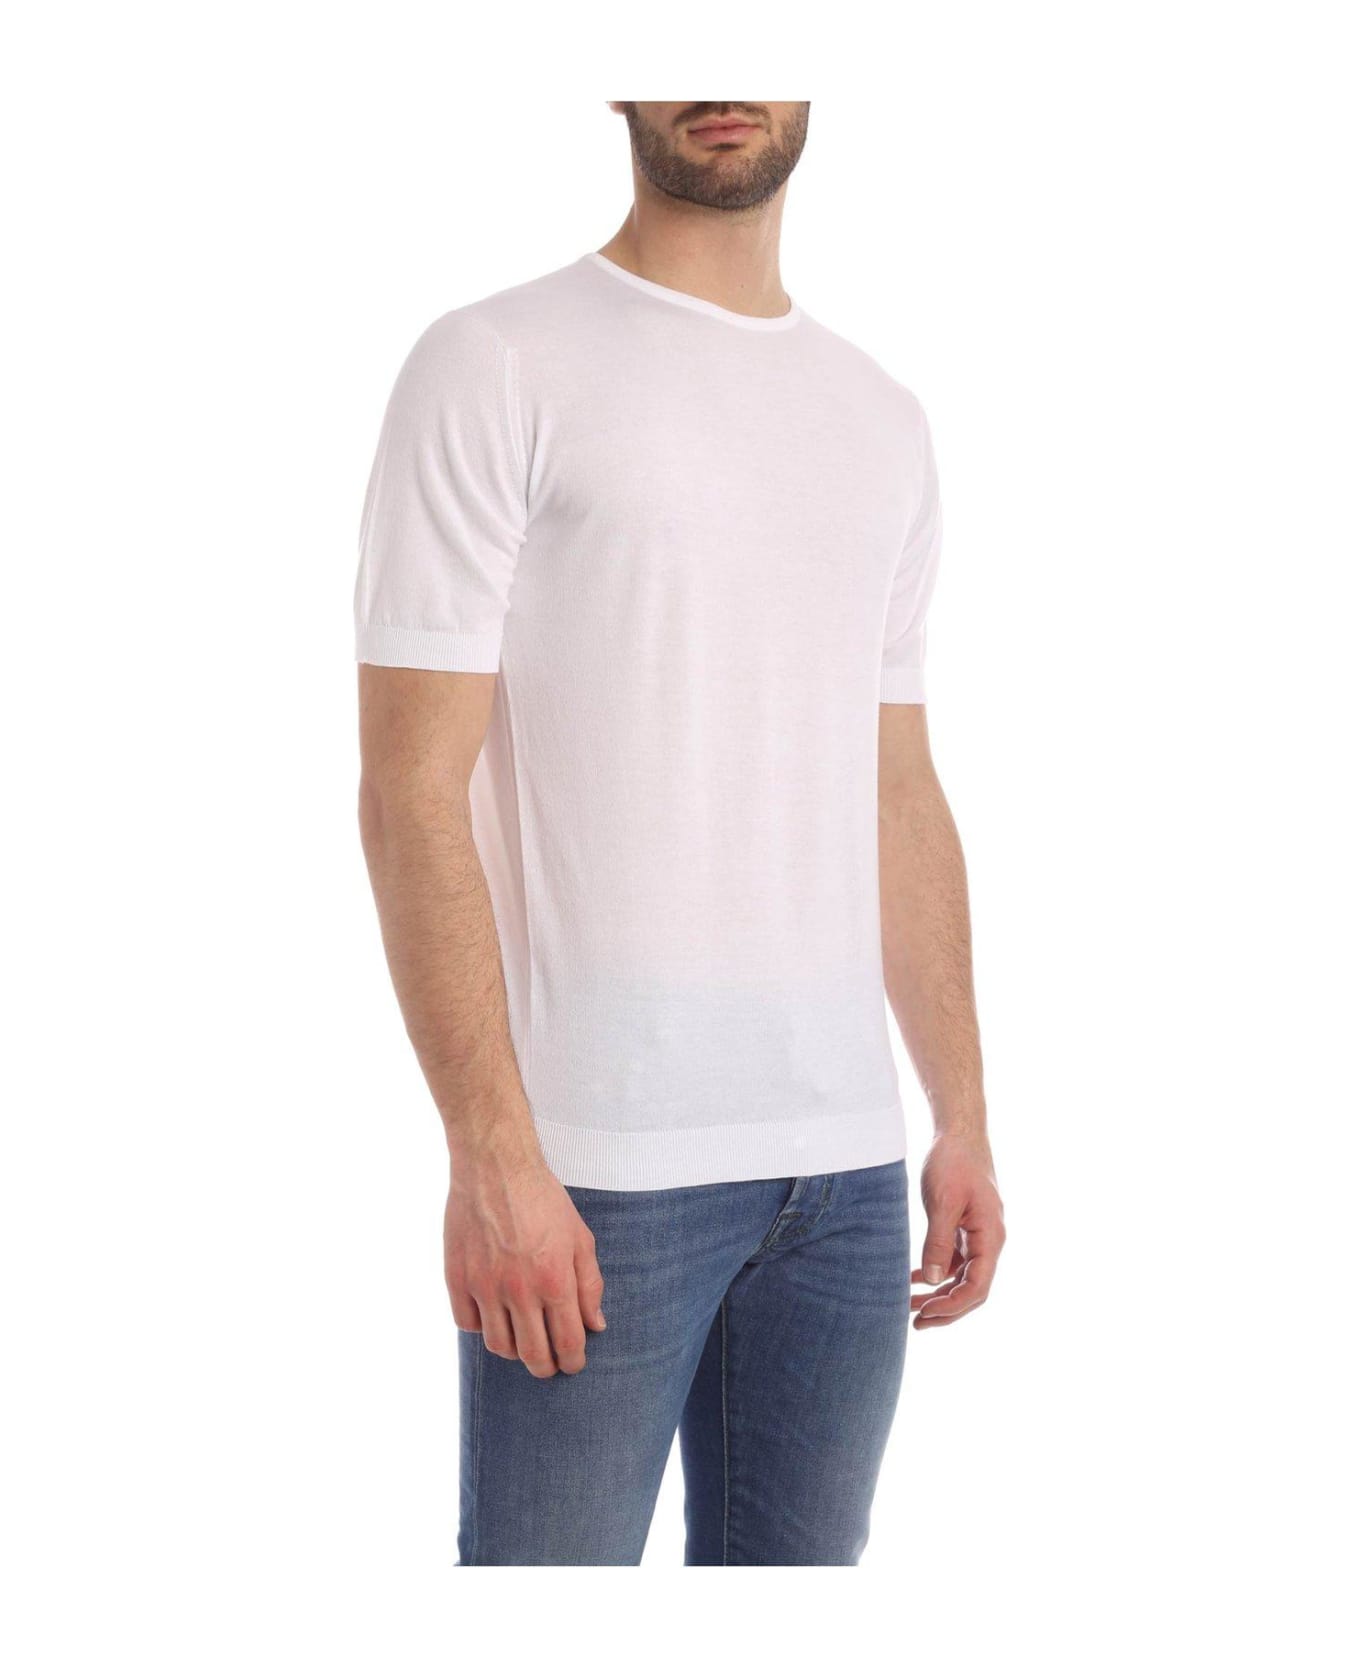 John Smedley Belden Classic T-shirt - WHITE シャツ